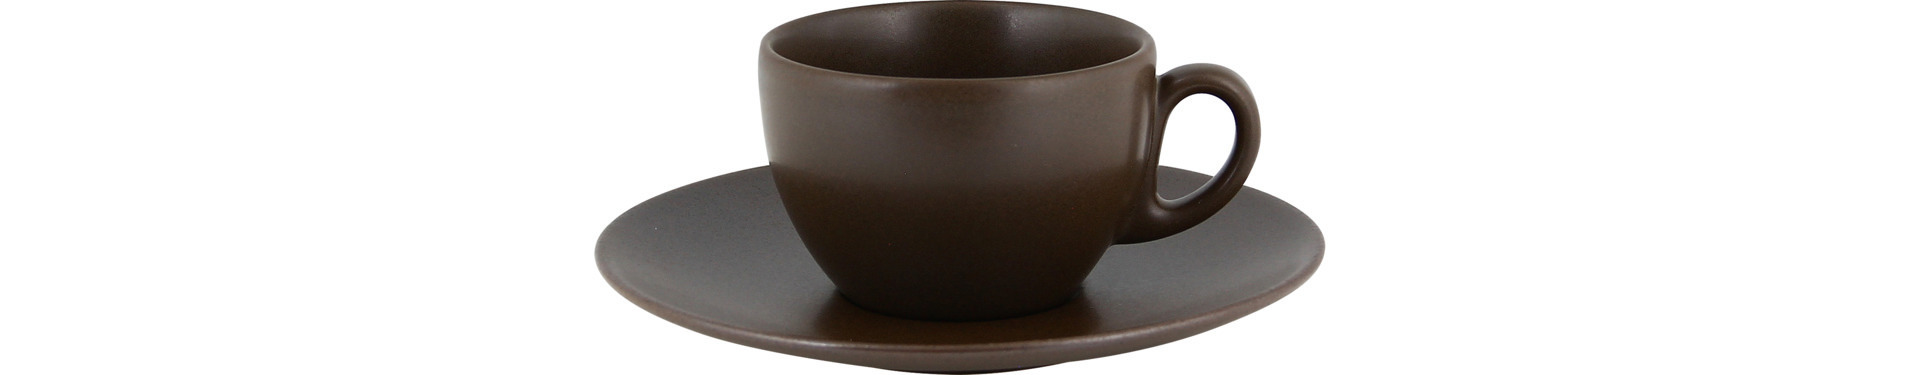 Untertasse 170 mm cocoa für Kaffeetasse GN116C23